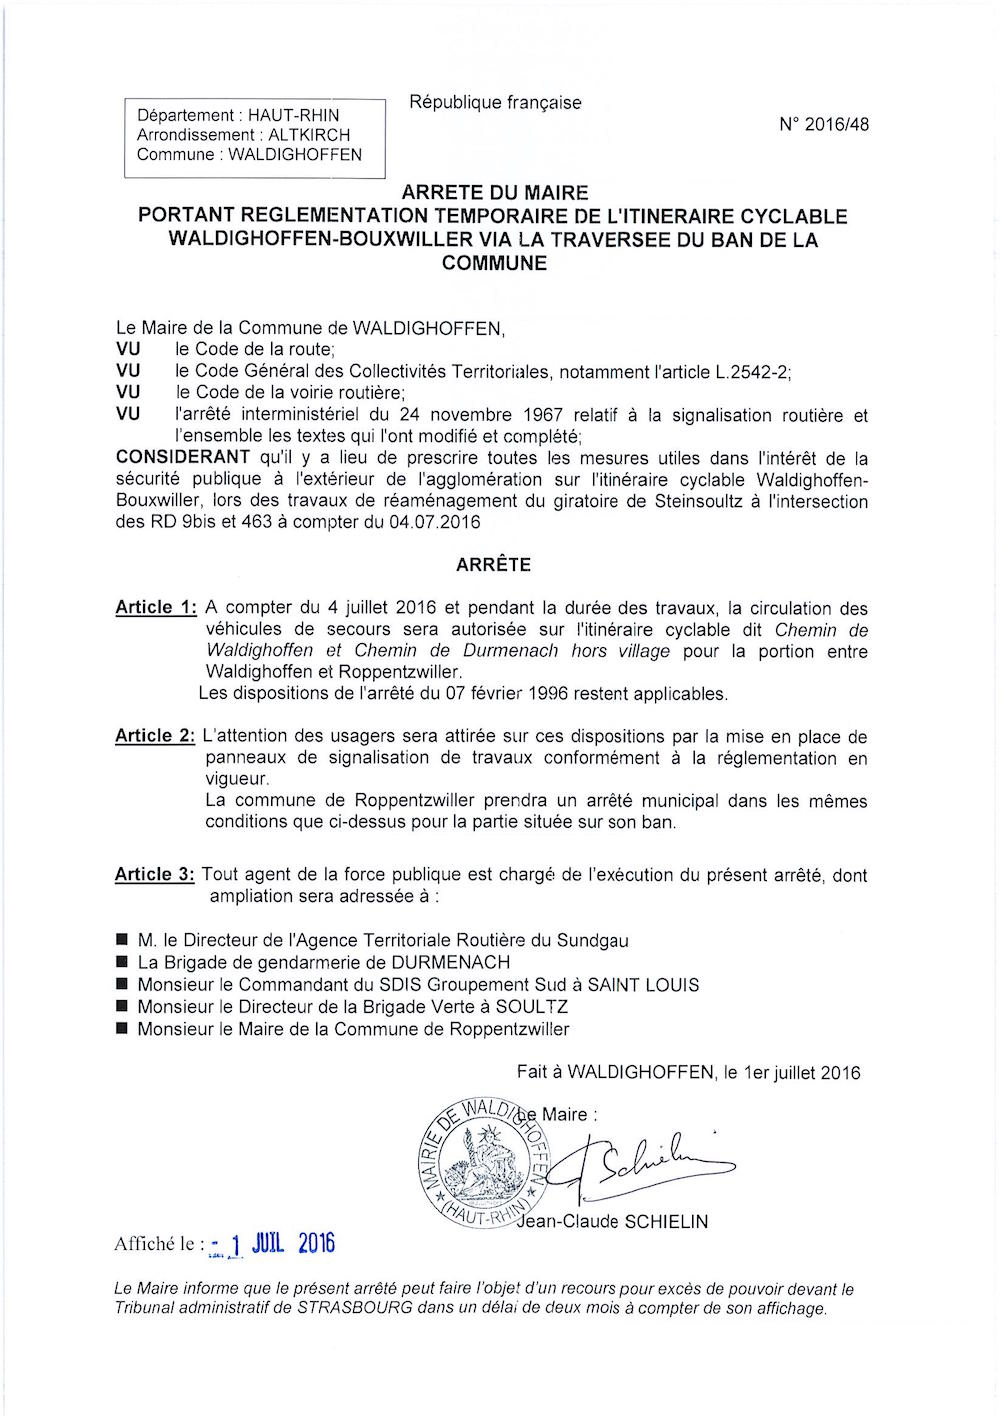 Arrêté du Maire portant reglementation temporaire de l'itineraire cyclable